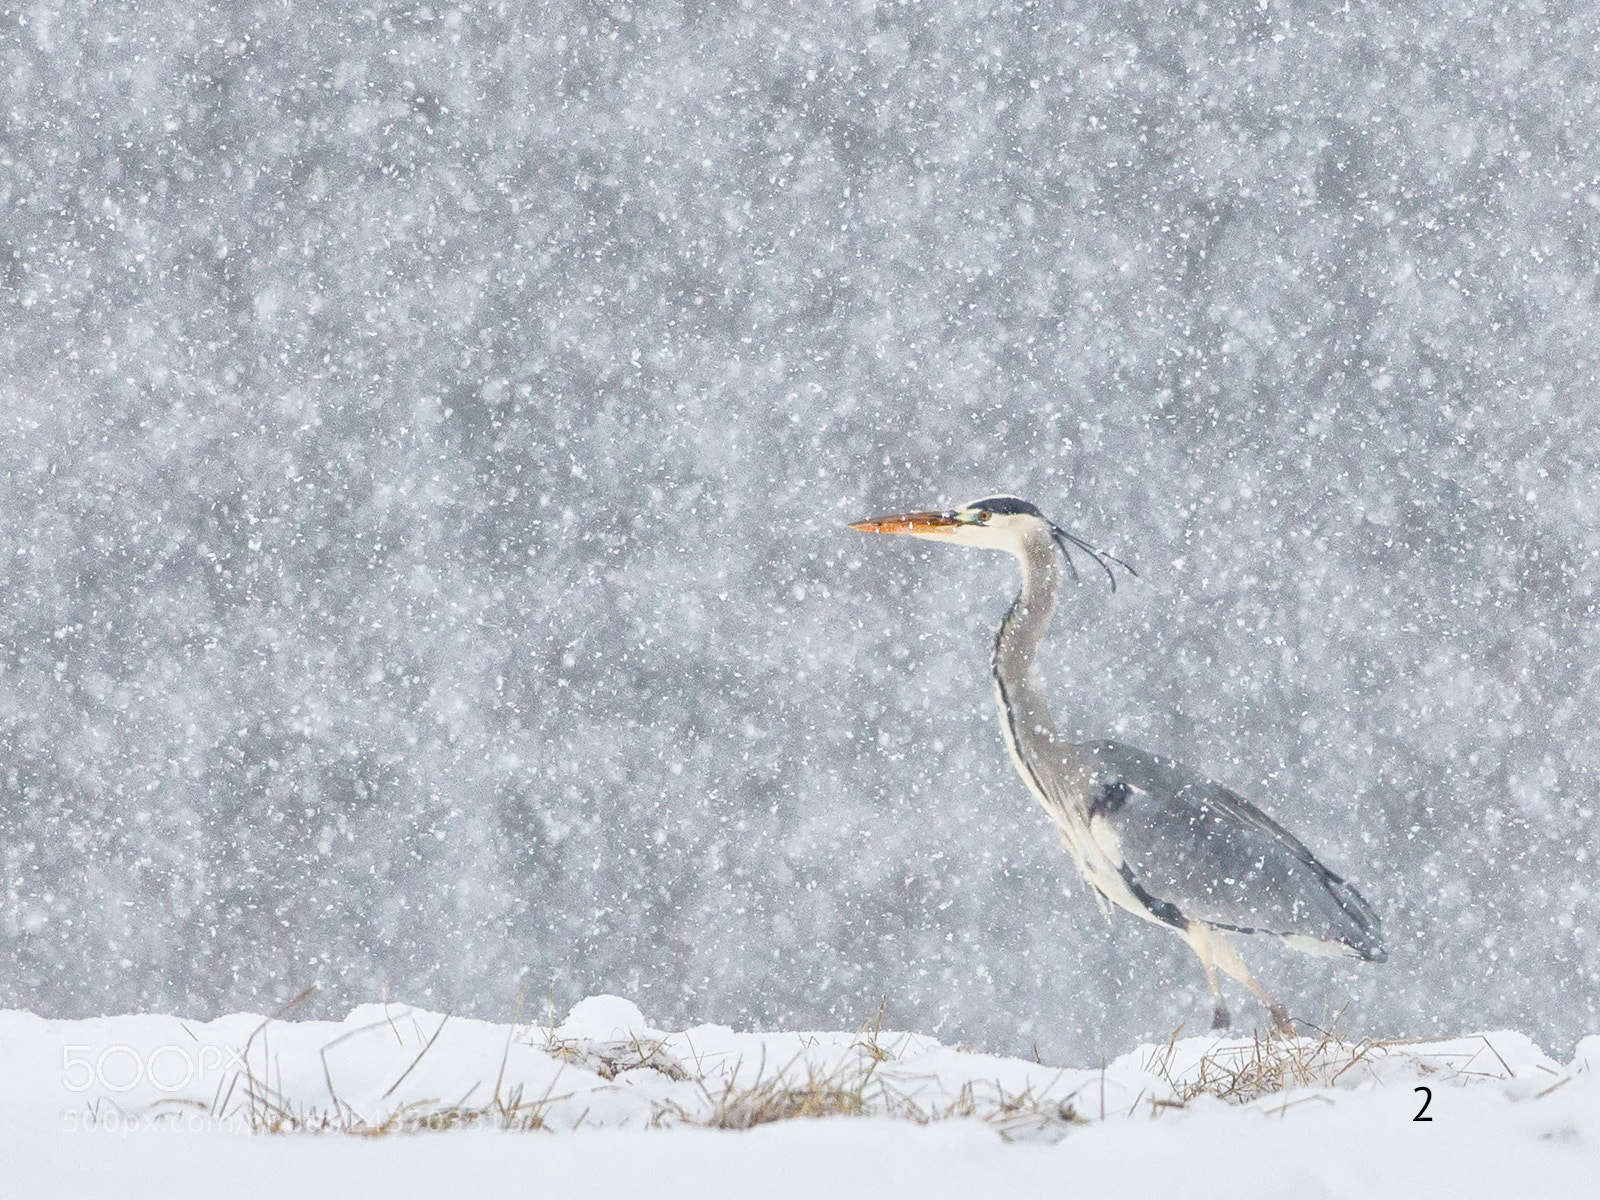 Canon EOS-1D X sample photo. Heron in winter snowfall photography